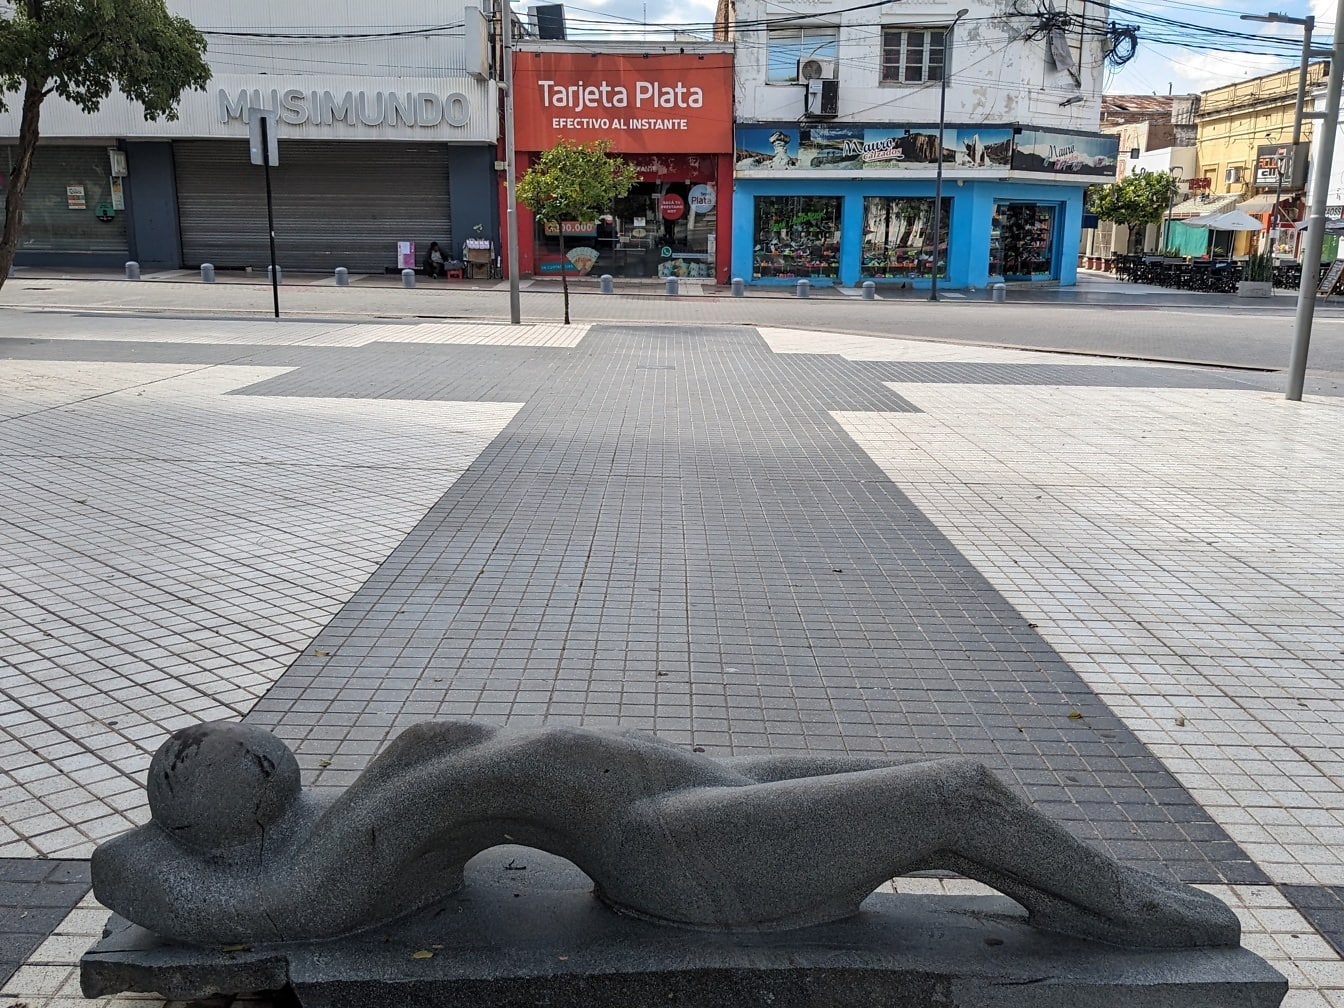 Statuie din granit negru a unei femei întinse pe un trotuar